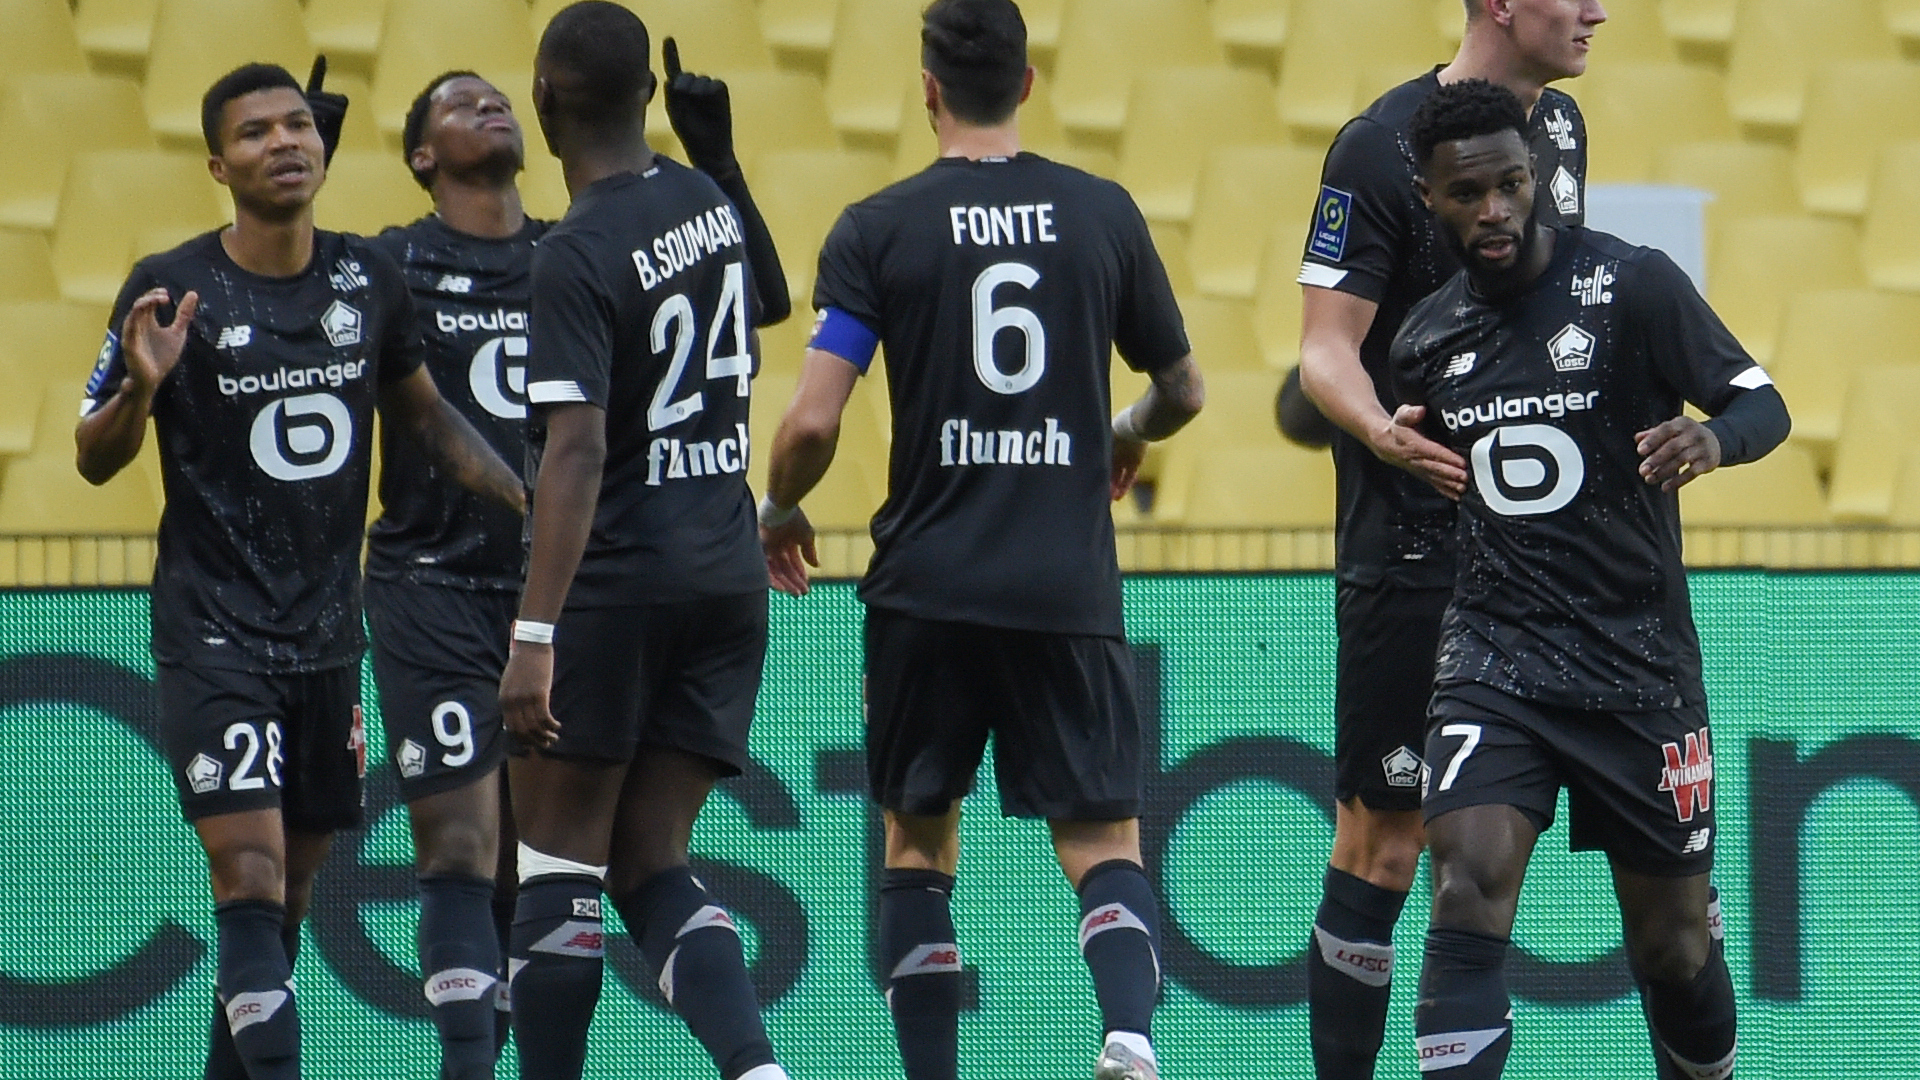 Nantes-Lille (0-2) - Les Dogues enfoncent Nantes et retrouvent la première place